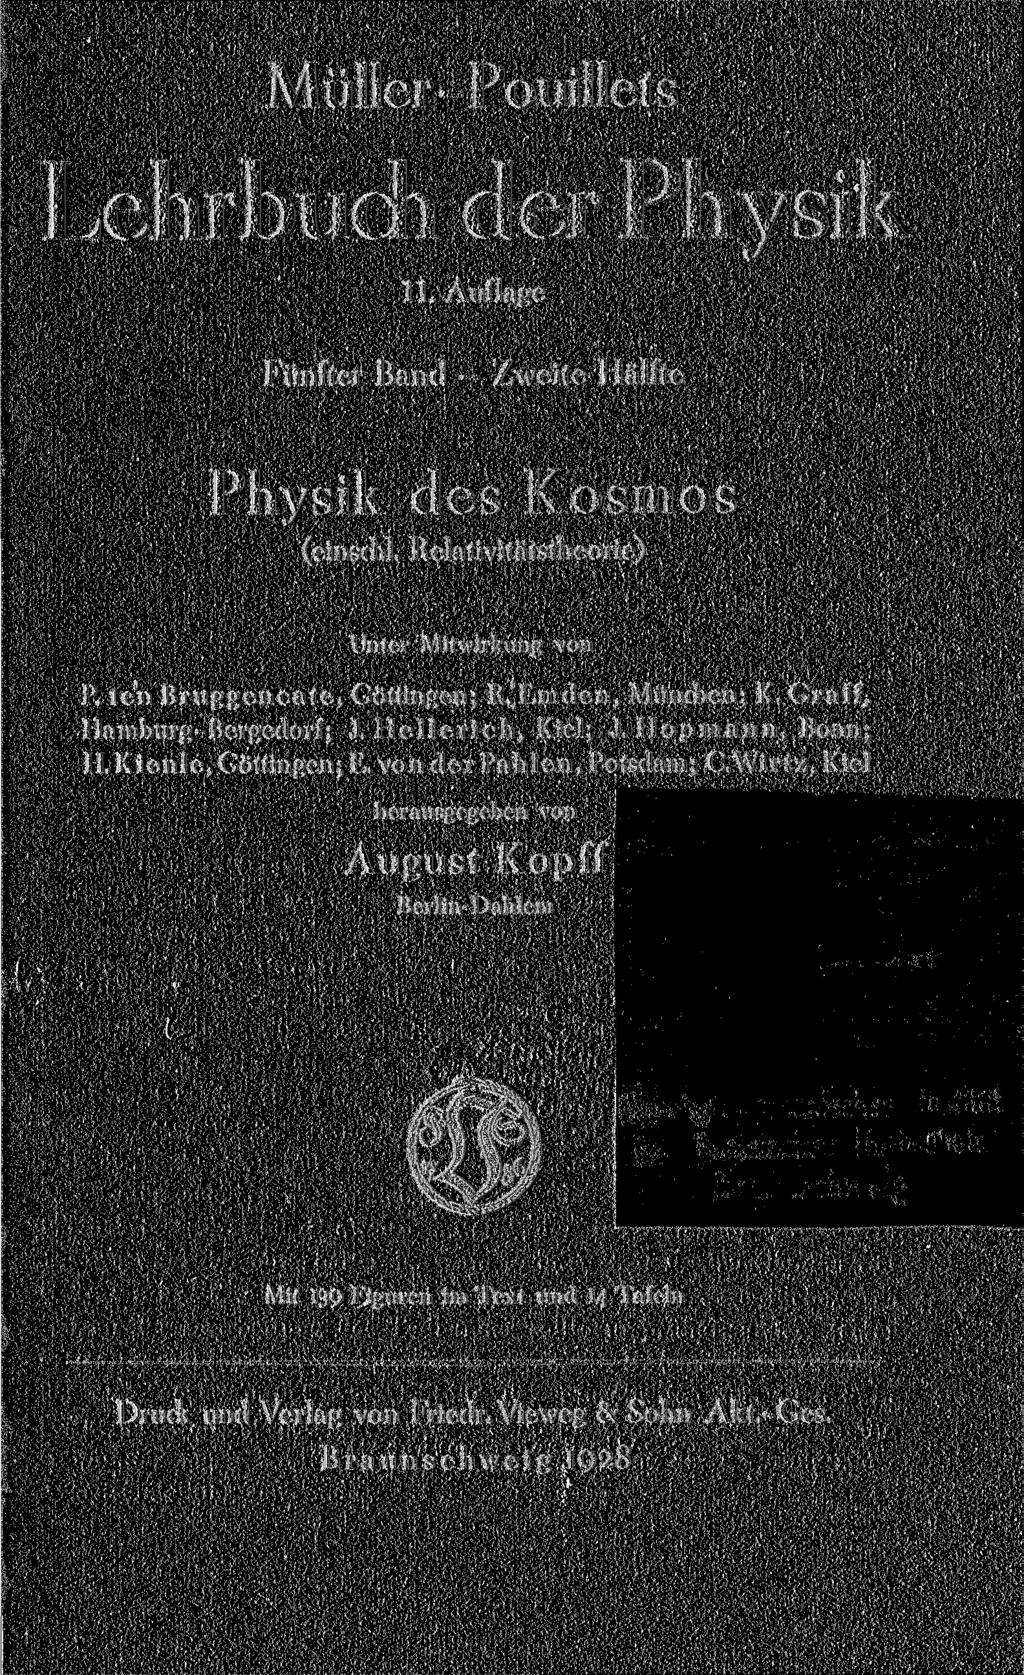 Müller-Pouillets Lehrbuch der Physik 11. Auflage Fünfter Band Zweite Hälfte Physik des Kosmos (einschl. Relativitätstheorie) Unter Mitwirkung von P. ten Bruggencate, Göttingen; R.'Emden, Mündien; K.